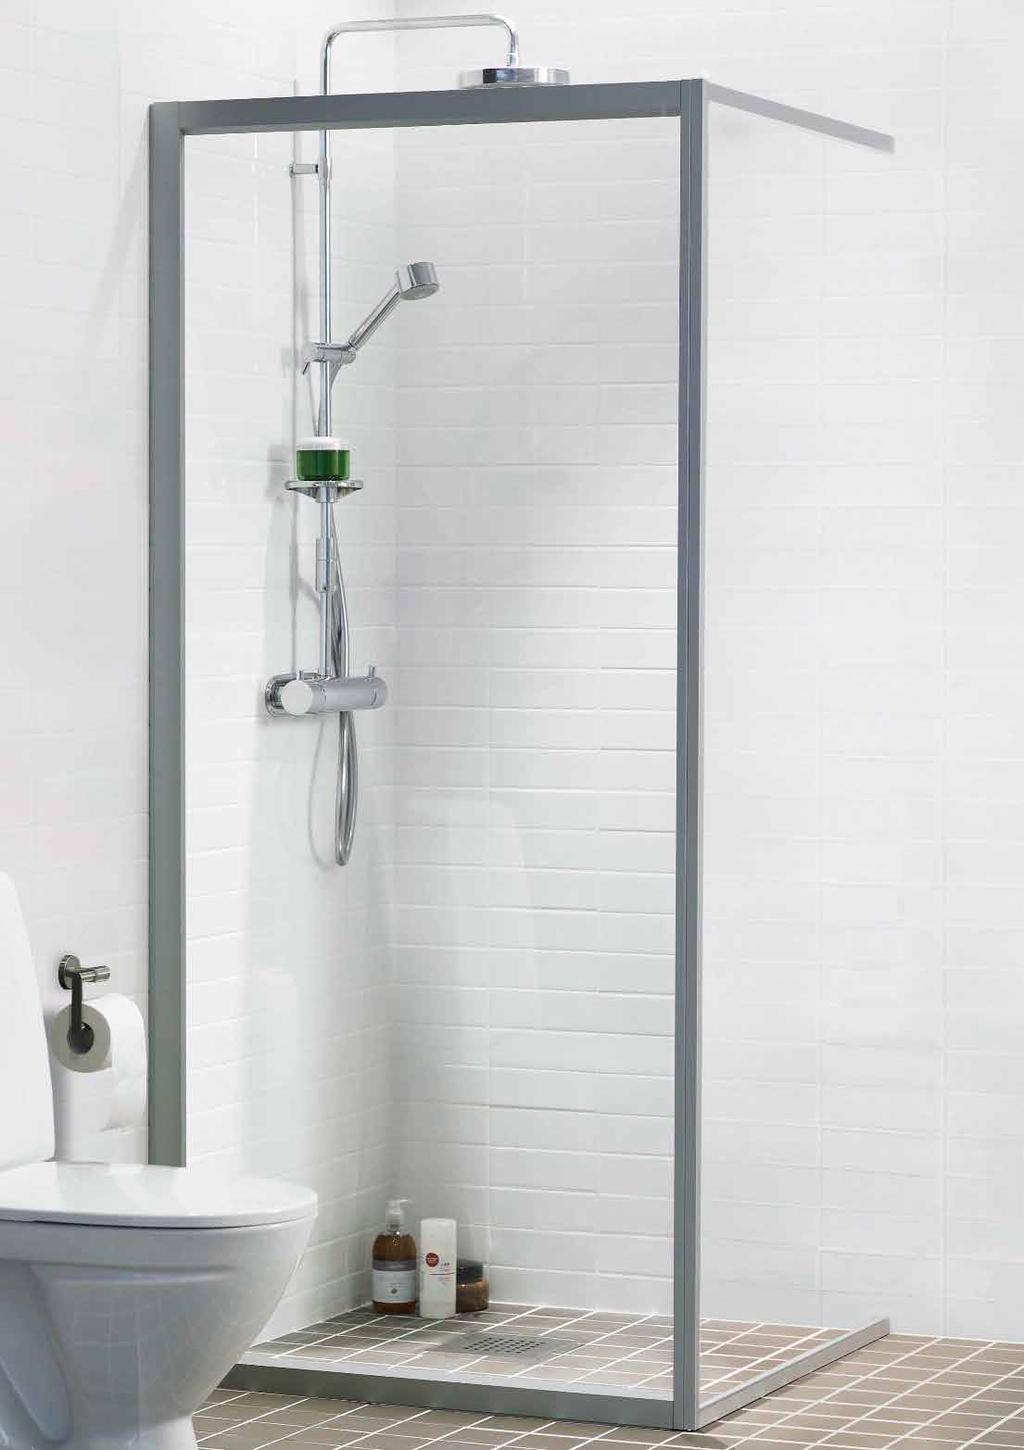 En duschhörna kan ge ett nätt och stiligt intryck i badrummet.